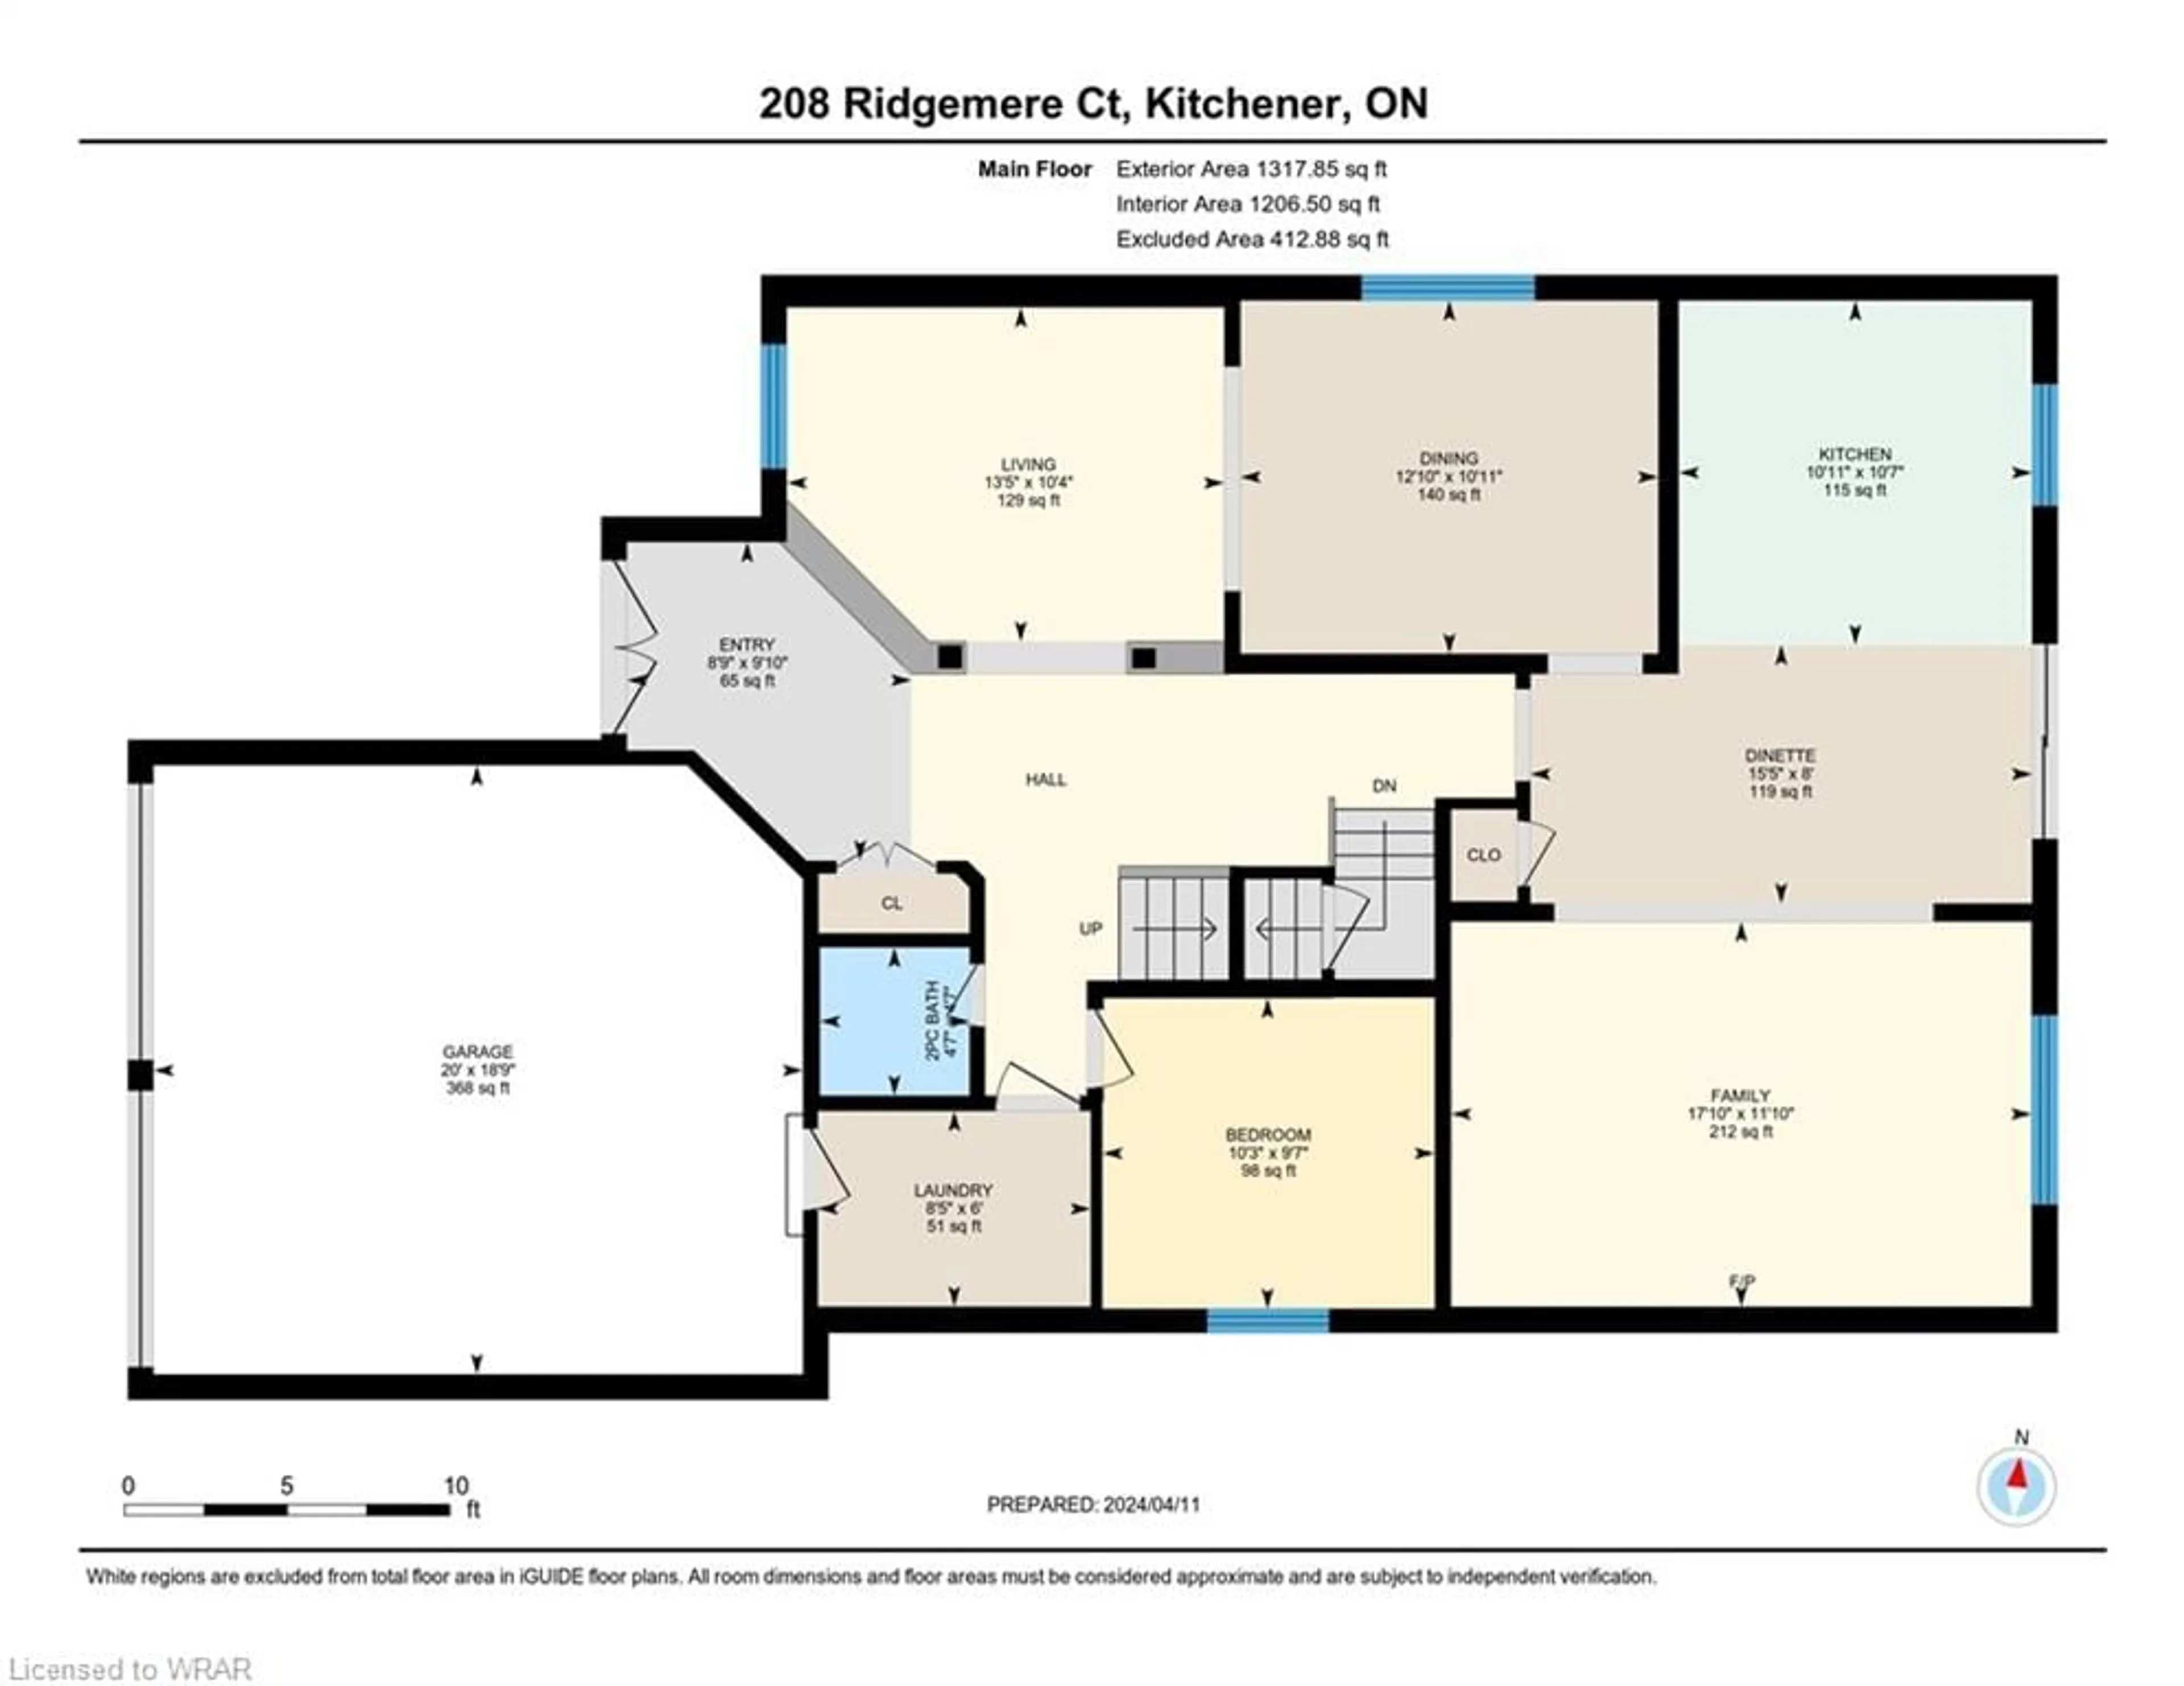 Floor plan for 208 Ridgemere Crt, Kitchener Ontario N2P 2V5